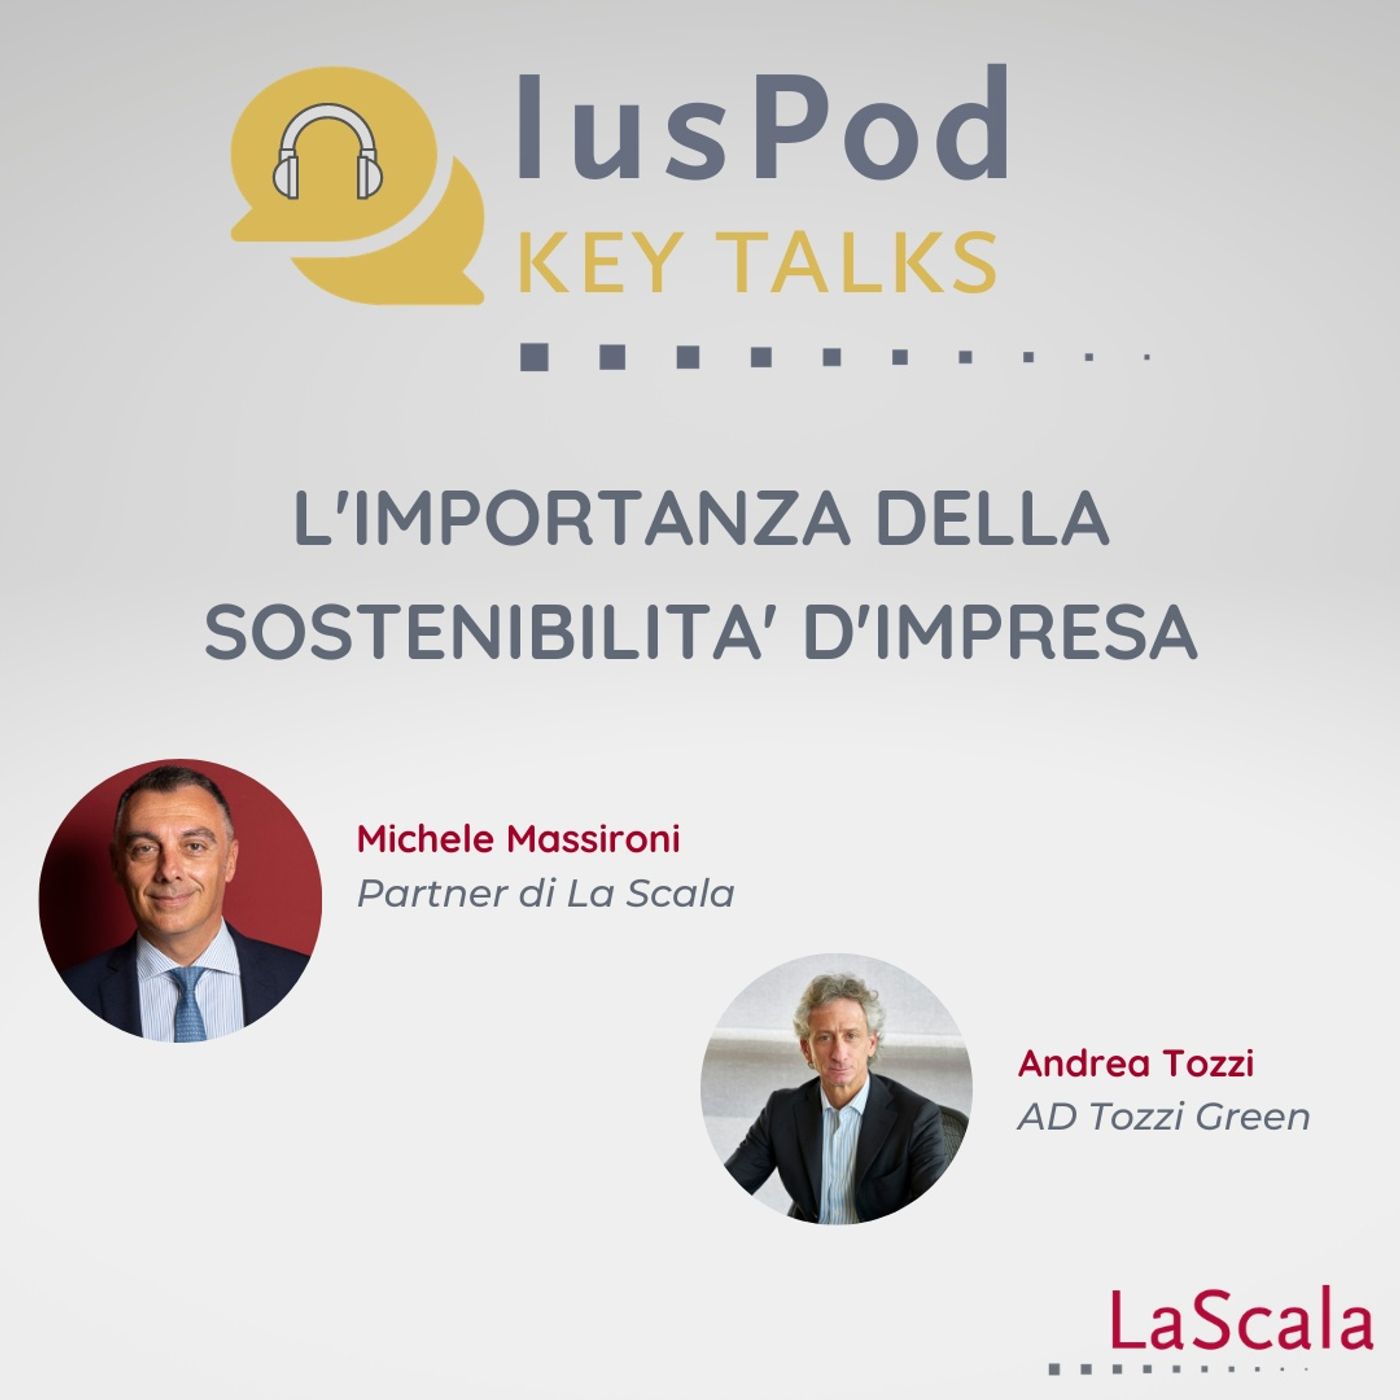 Ep. 1 IusPod Key Talks L'importanza della sostenibilità d'impresa